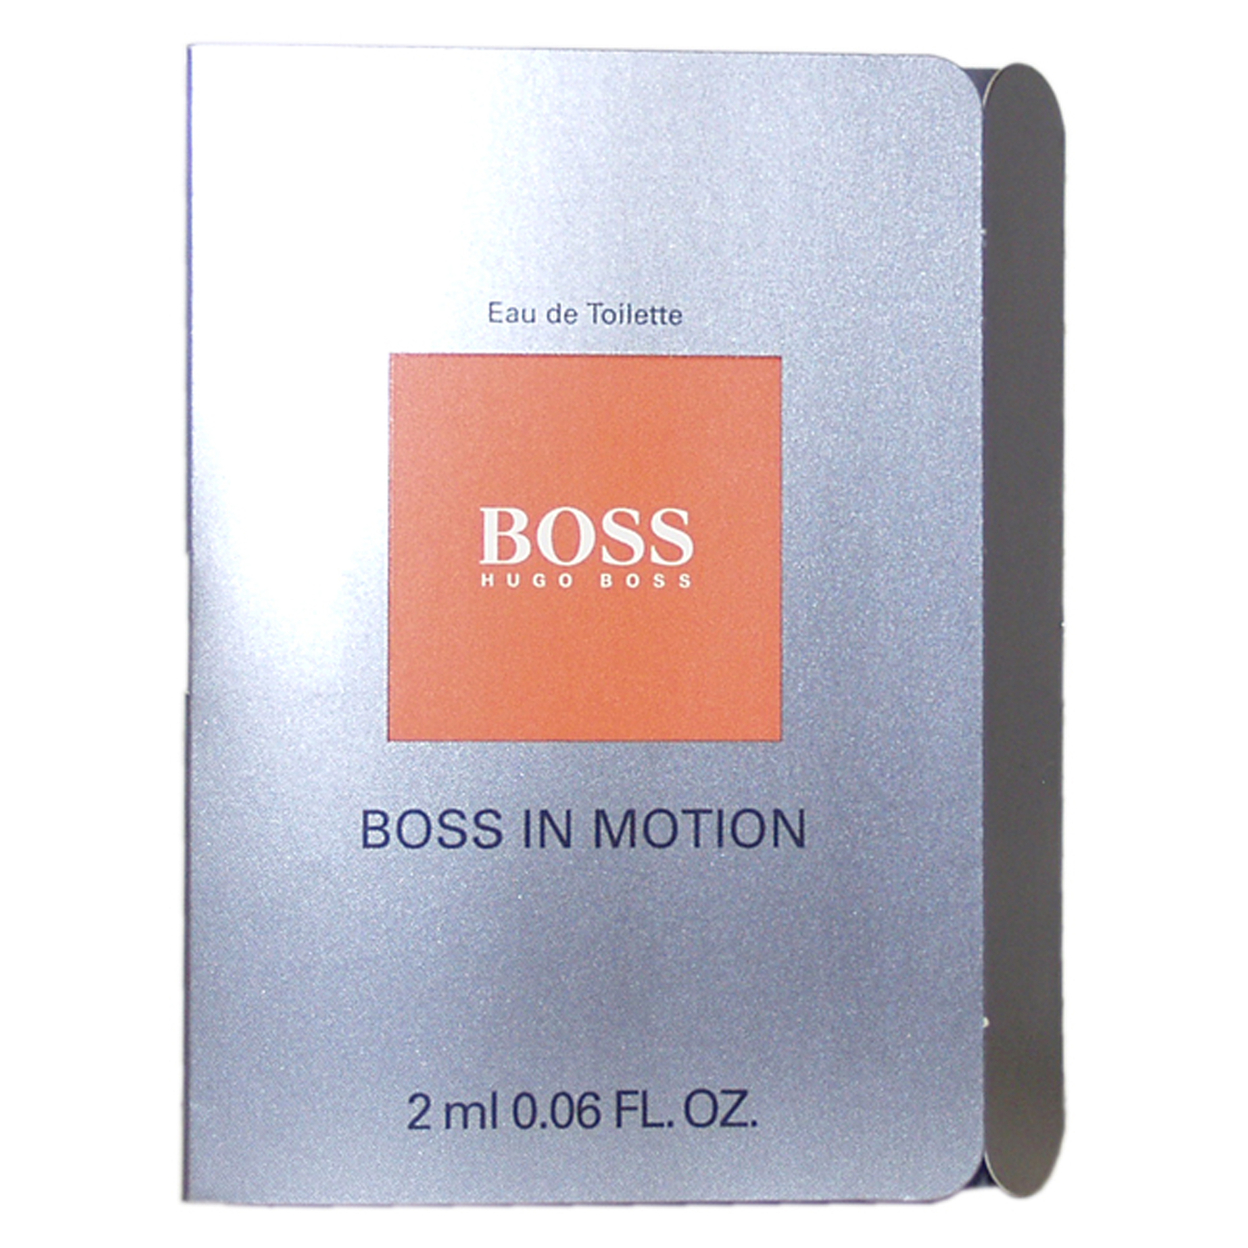 Hugo Boss Boss In Motion EDT Splash Vial 2 Ml